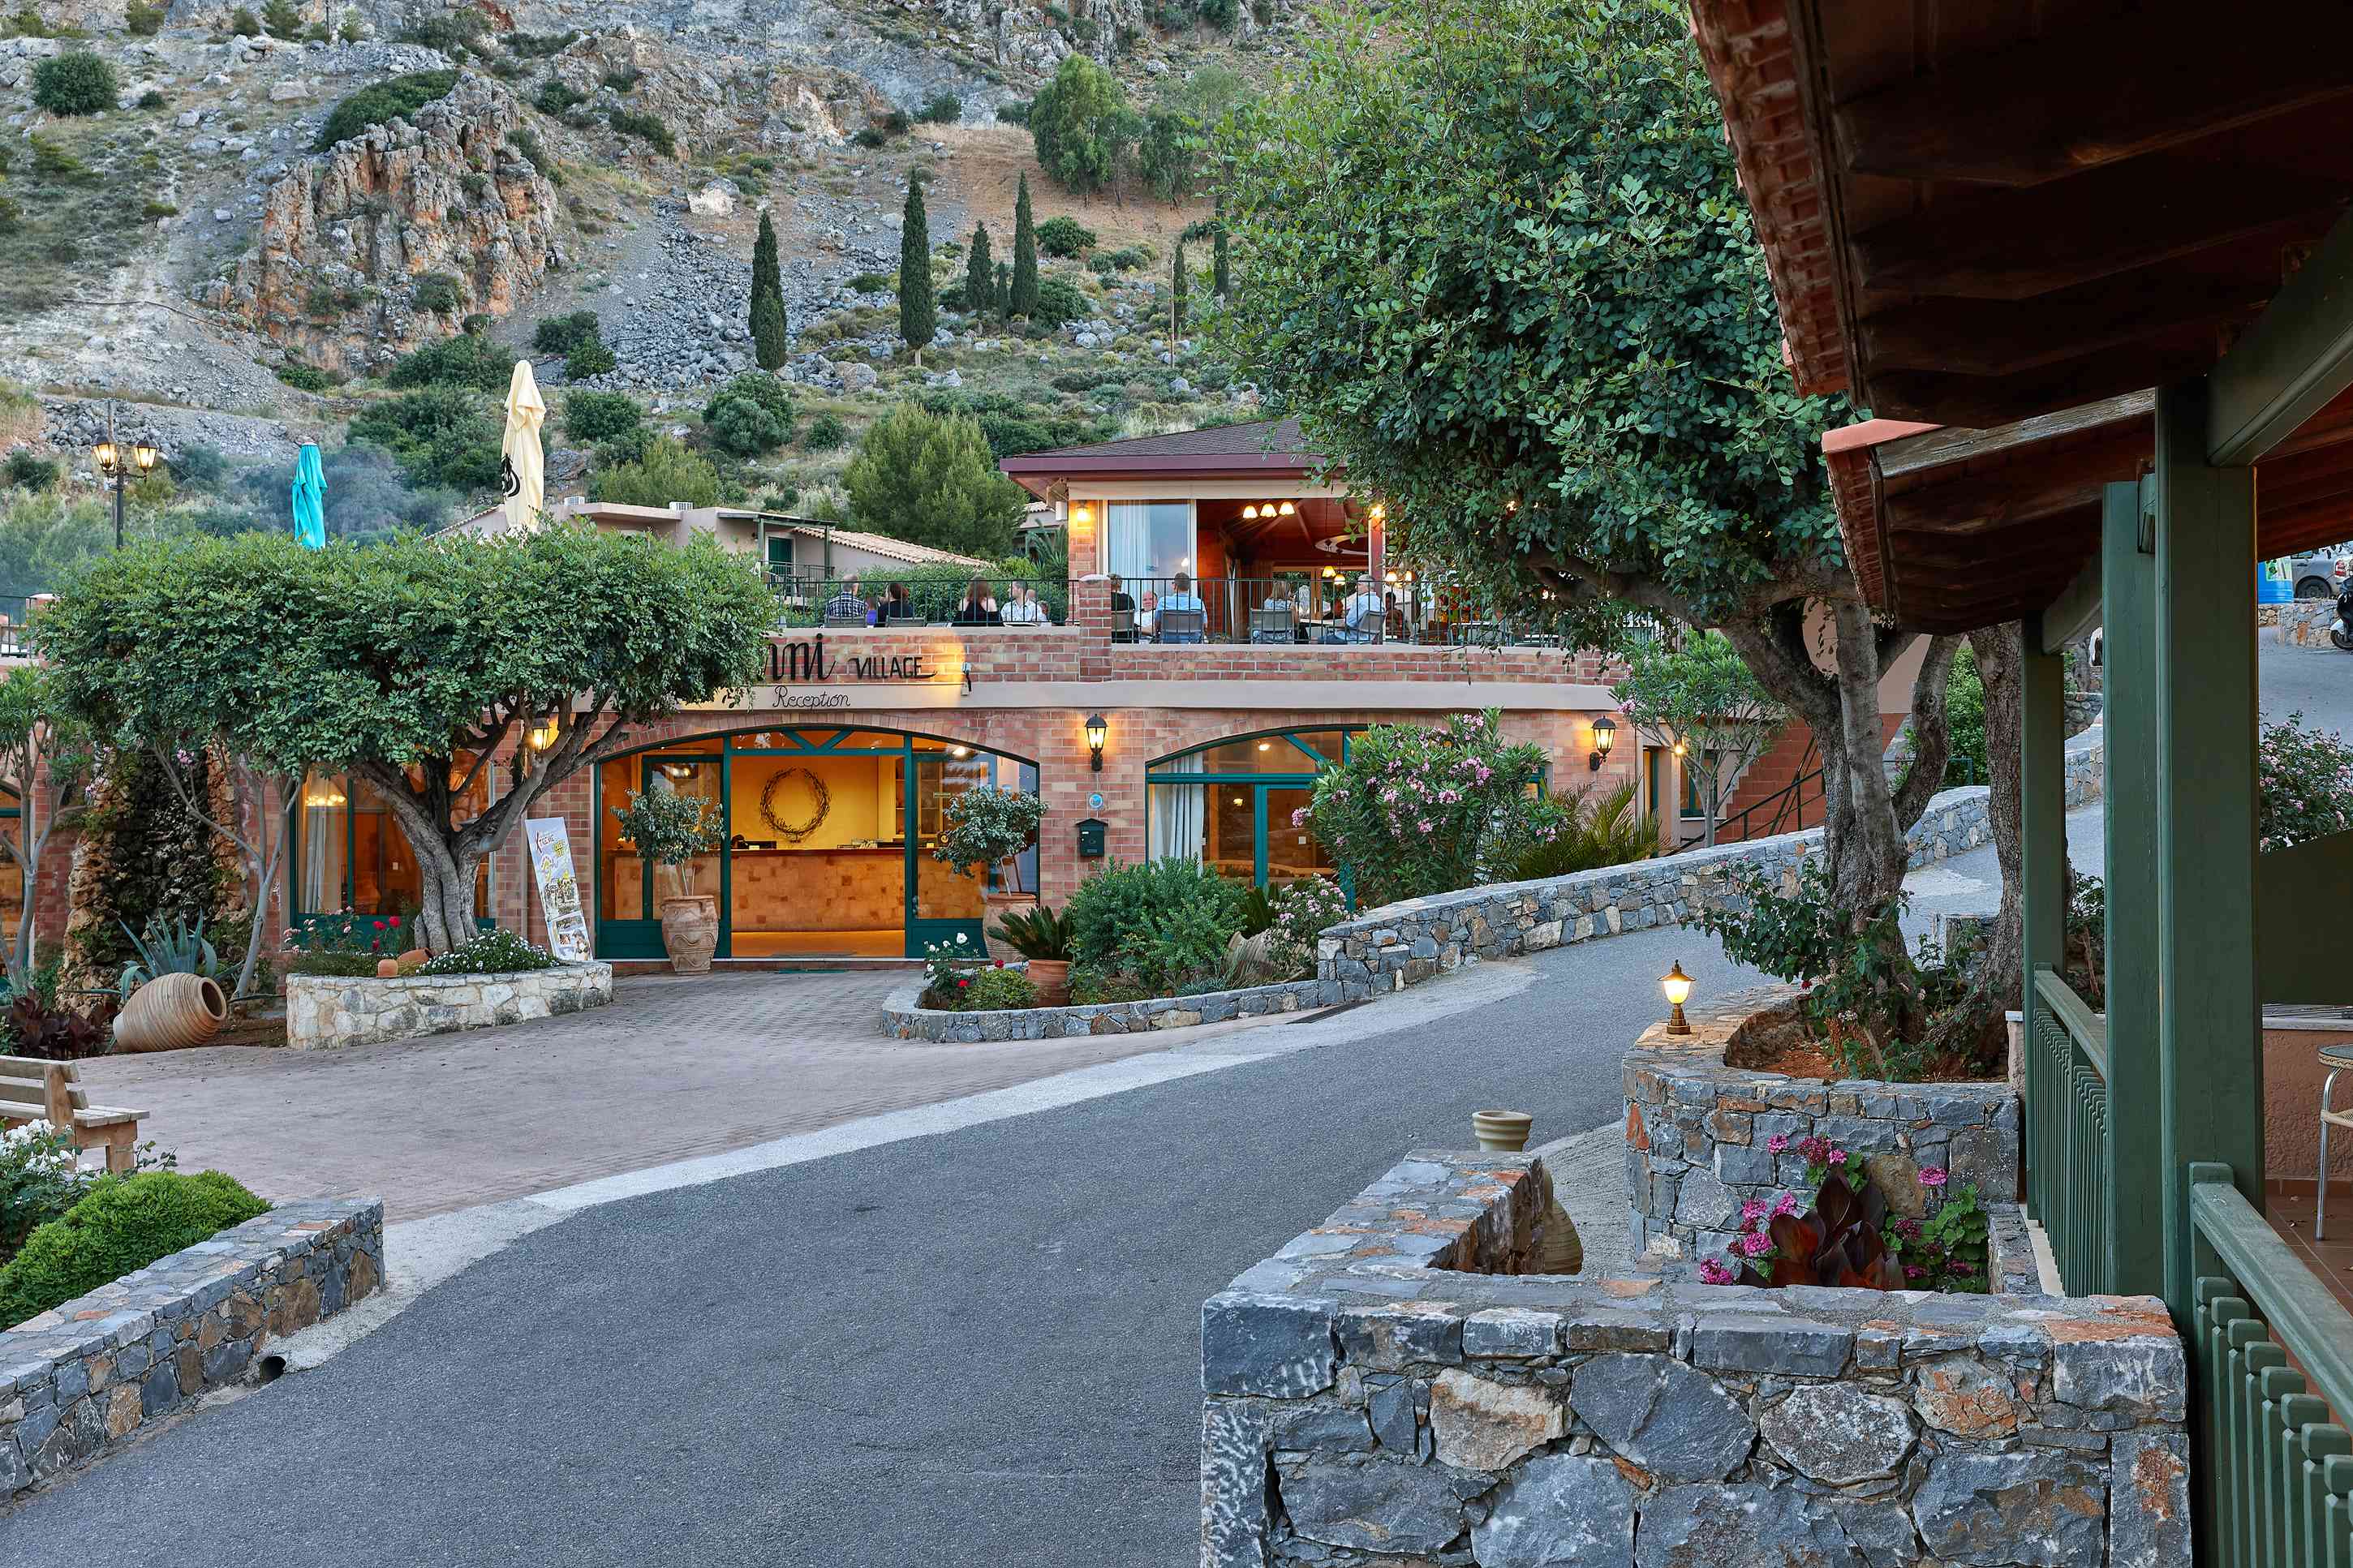 Marni Village (Crete)